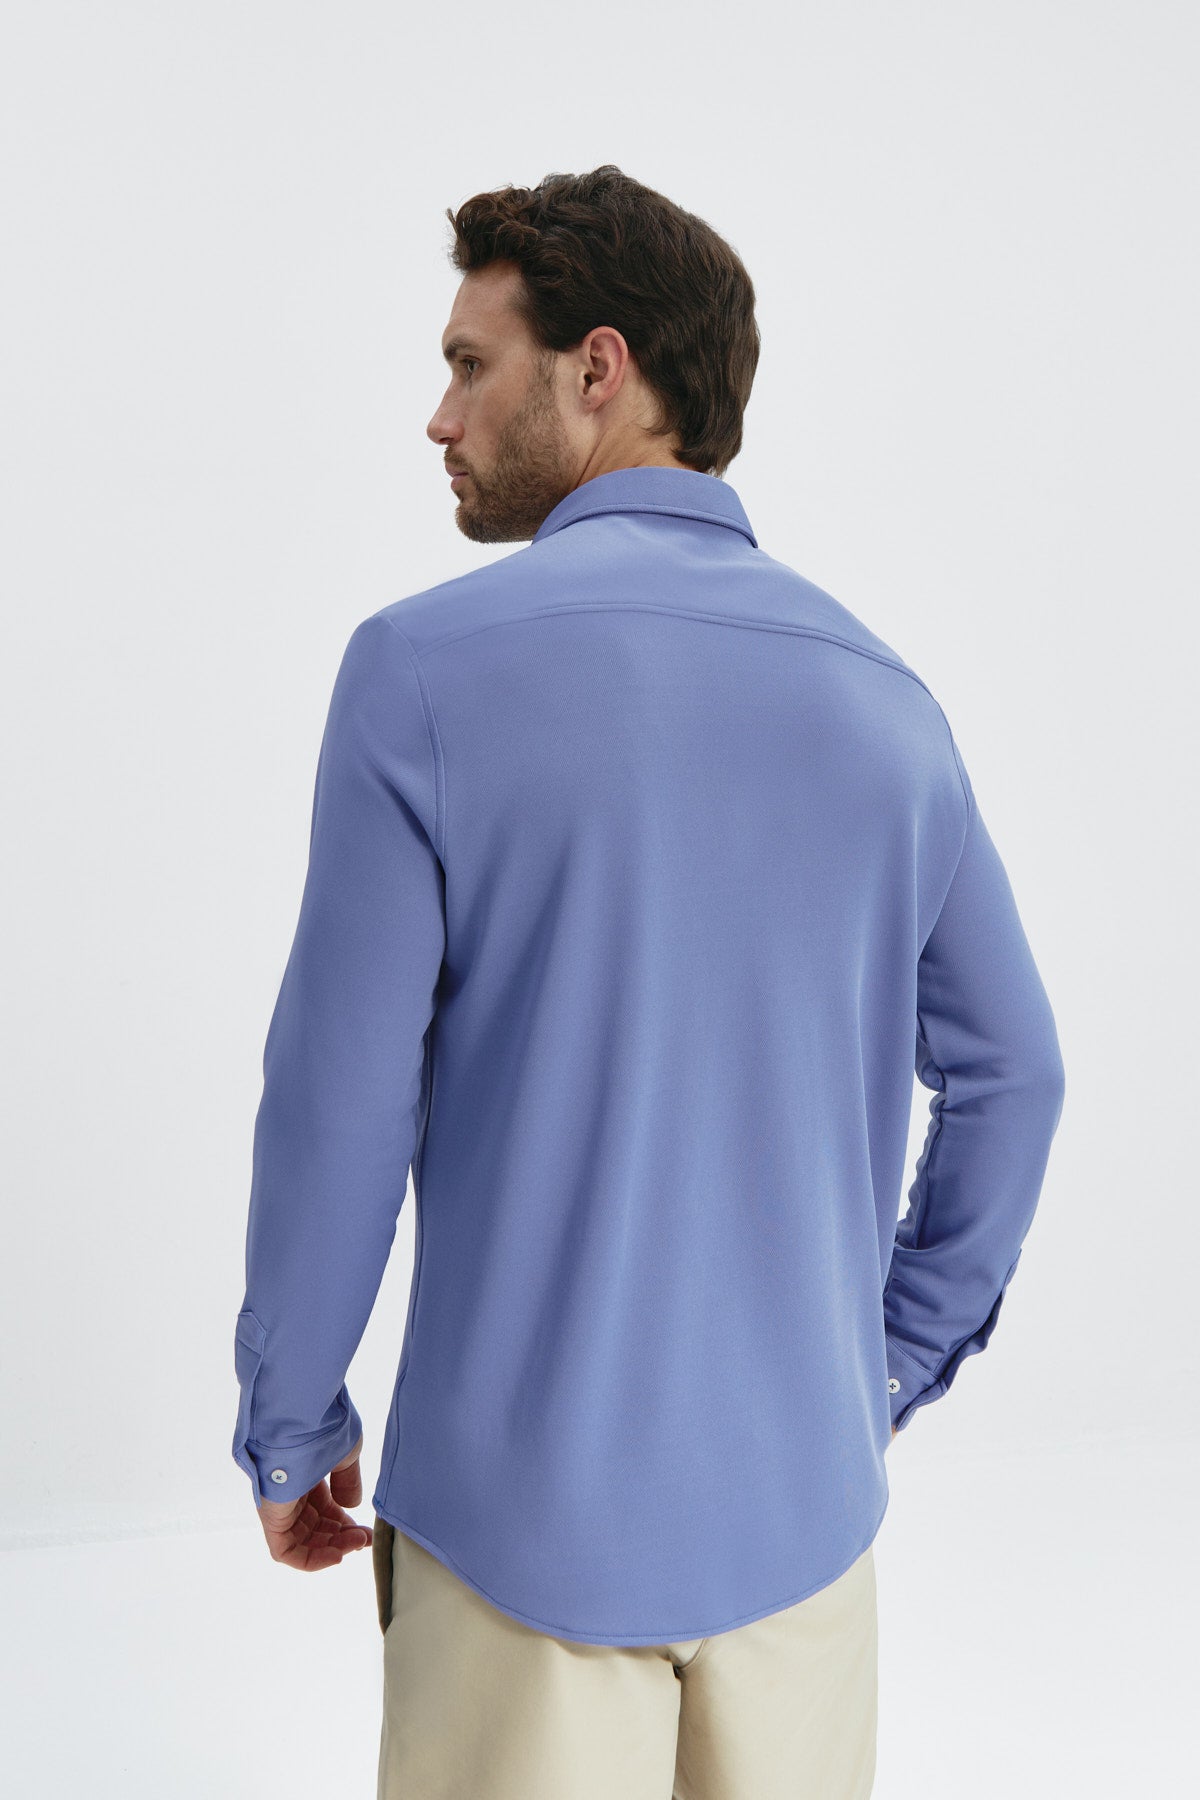 Camisa lavanda regular de Sepiia, fresca y elegante, resistente a manchas y olores. Foto de espalda.